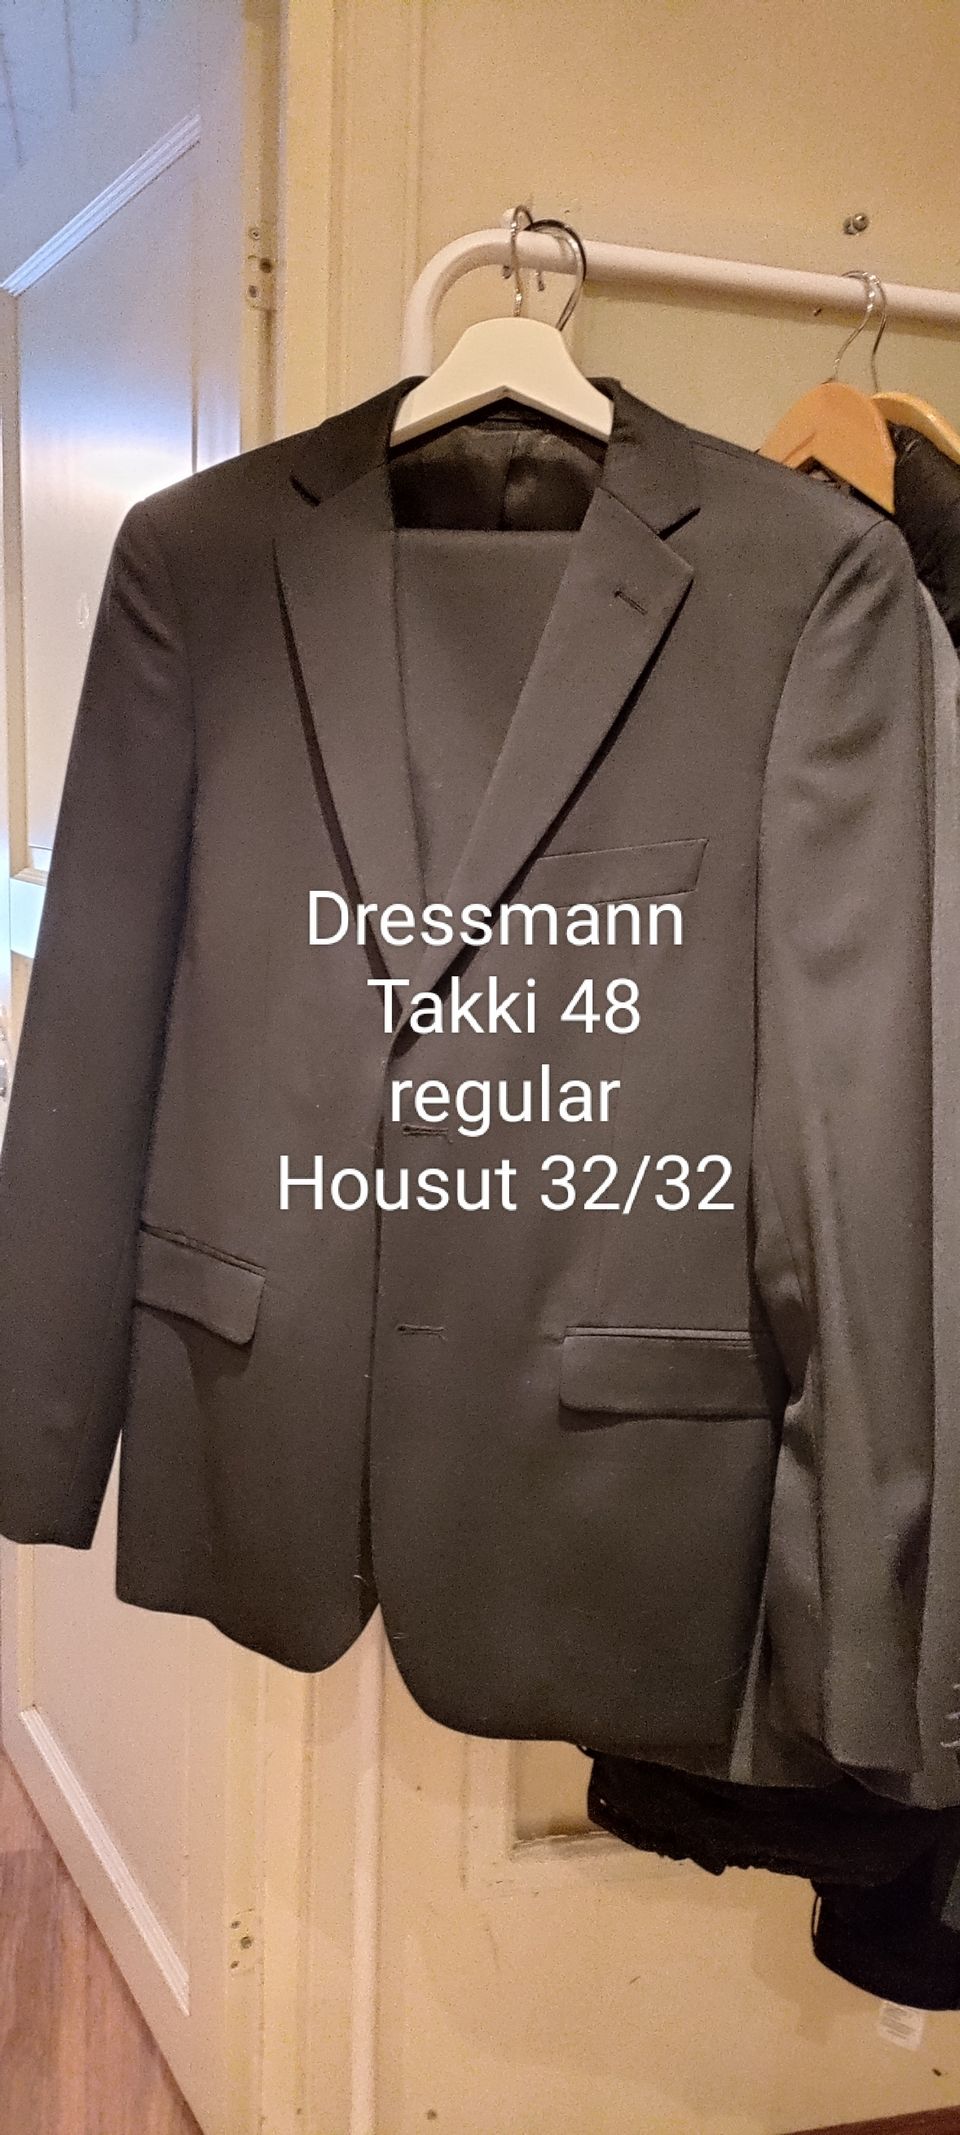 Laadukas Dressmann puku